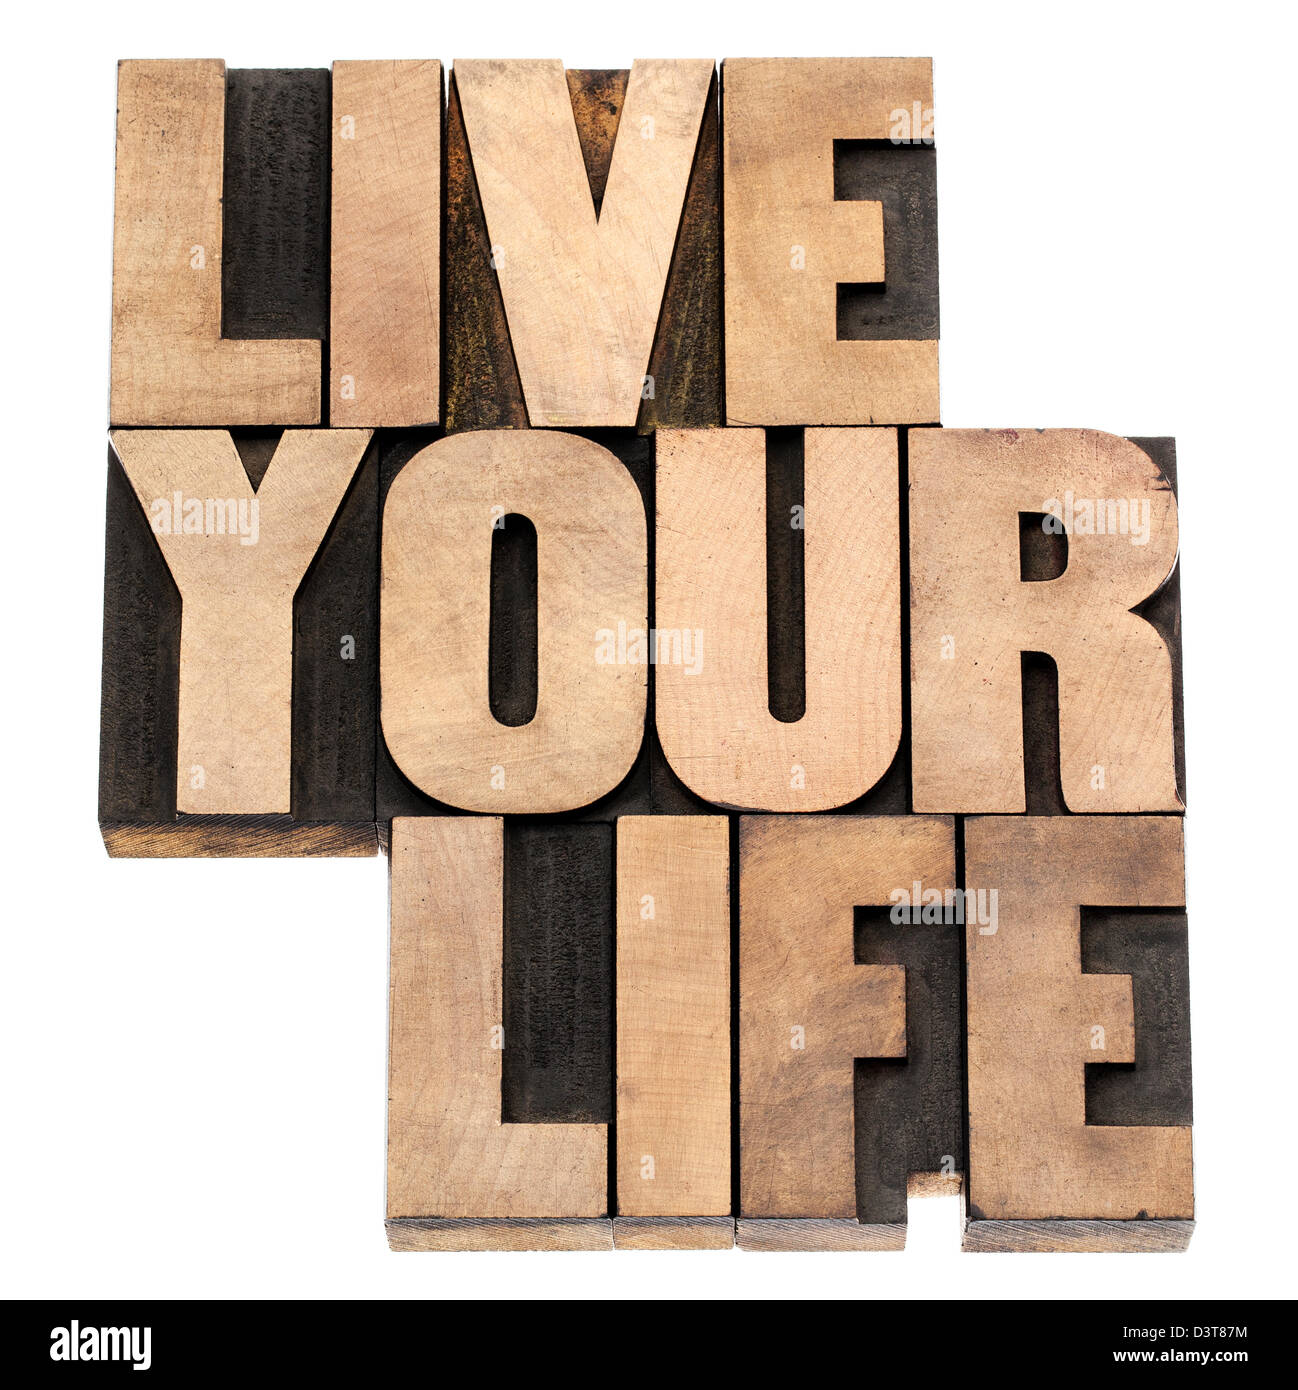 Leben Sie Ihr Leben-Satz - isolierten Text in Vintage Buchdruck Holzart Druckstöcke Stockfoto